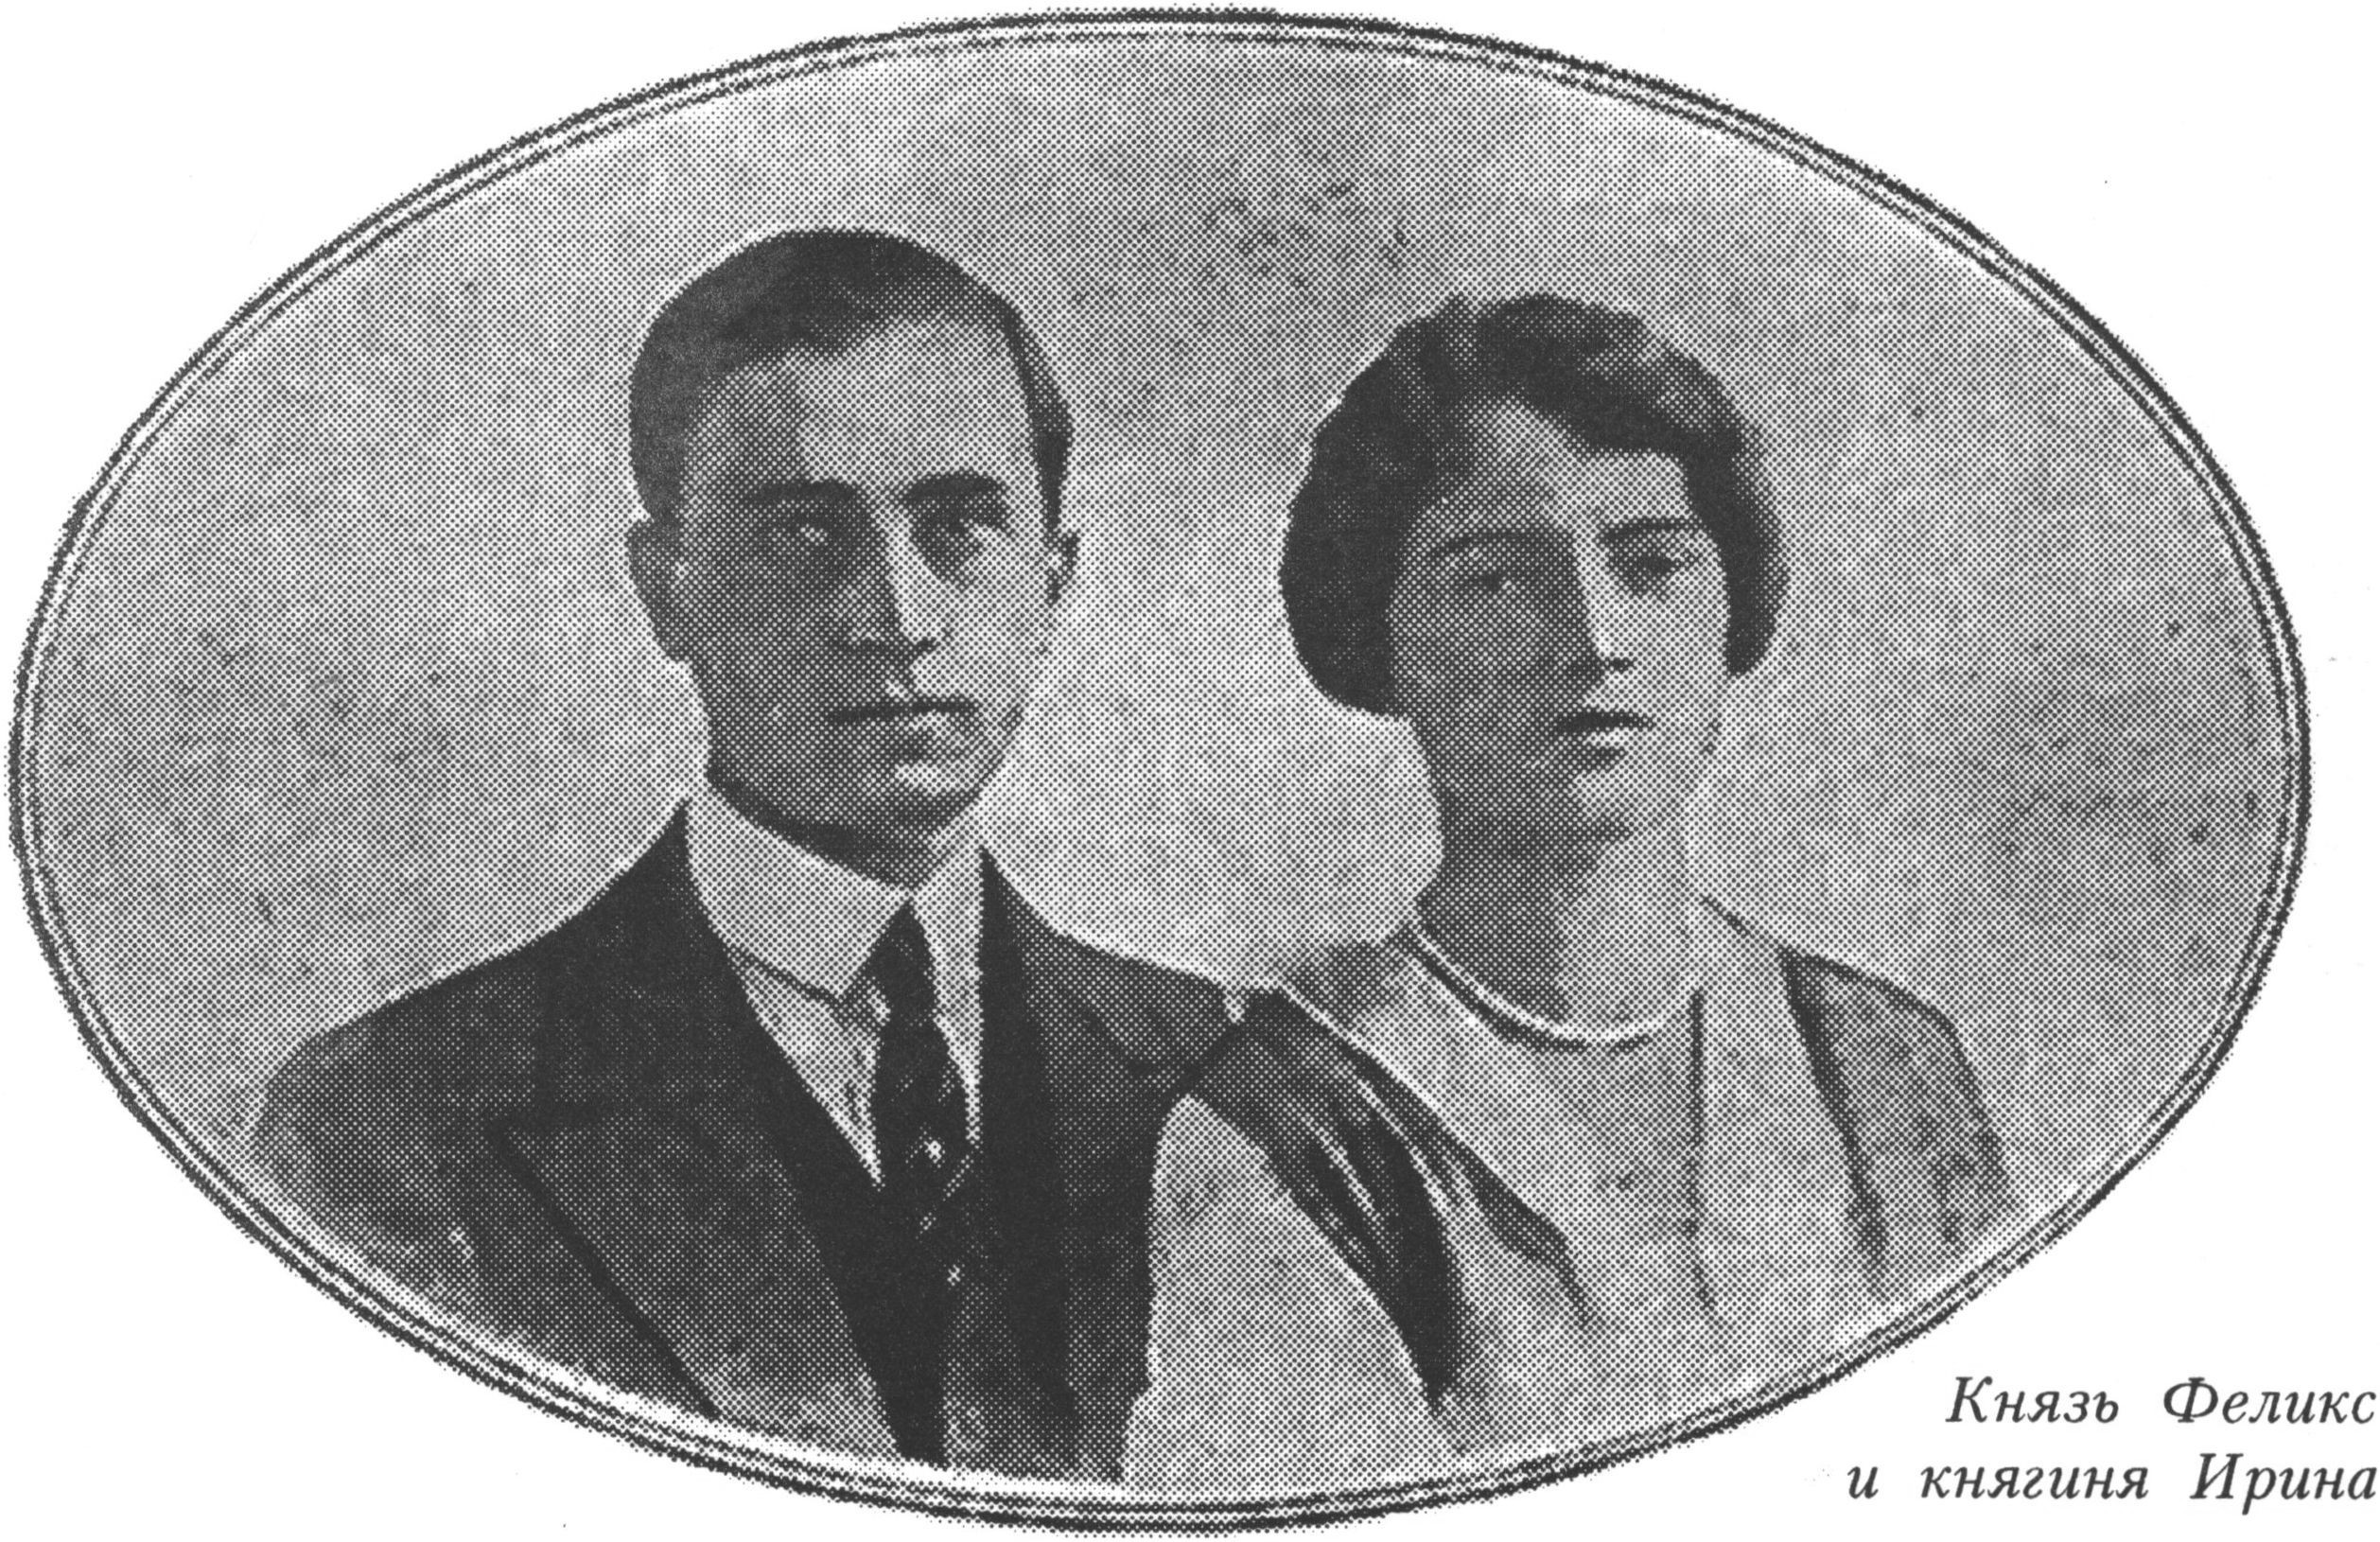 Князь Феликс Юсупов, граф Сумароков-Эльстон и княгиня Ирина. Фото из журнала «Огонек», 23 февраля 1914 года